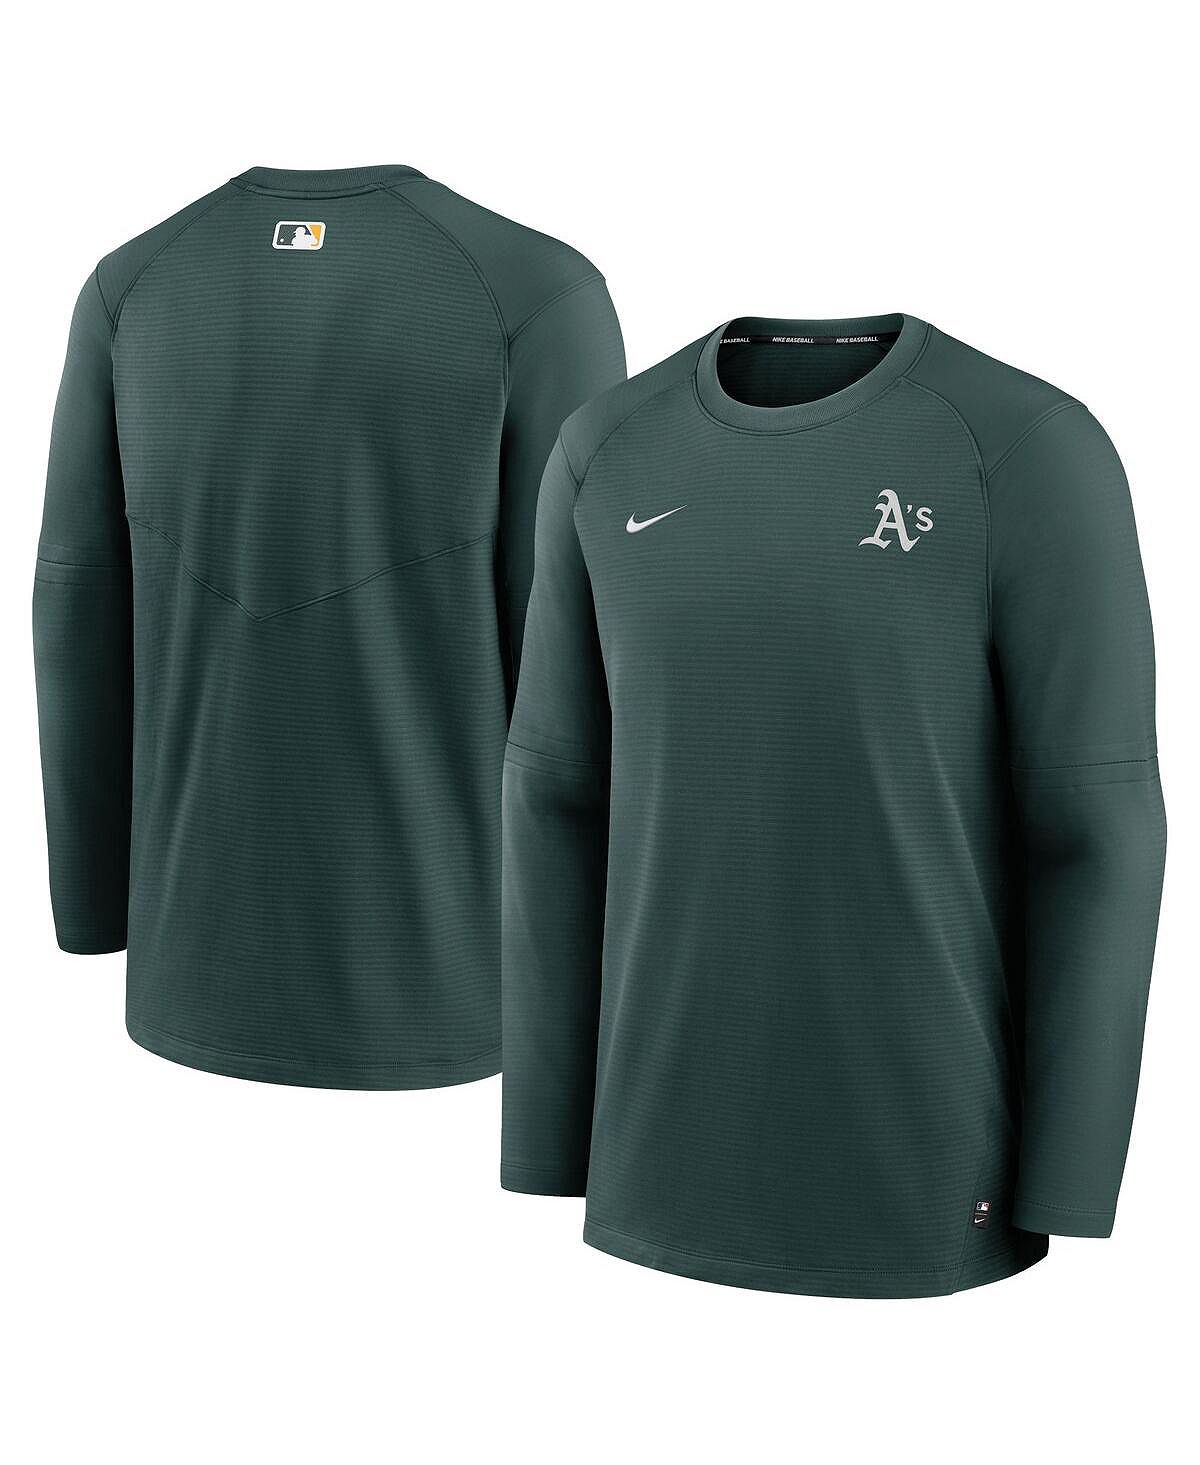 Мужская зеленая футболка с длинным рукавом и логотипом Oakland Athletics Authentic Collection Performance Nike цена и фото